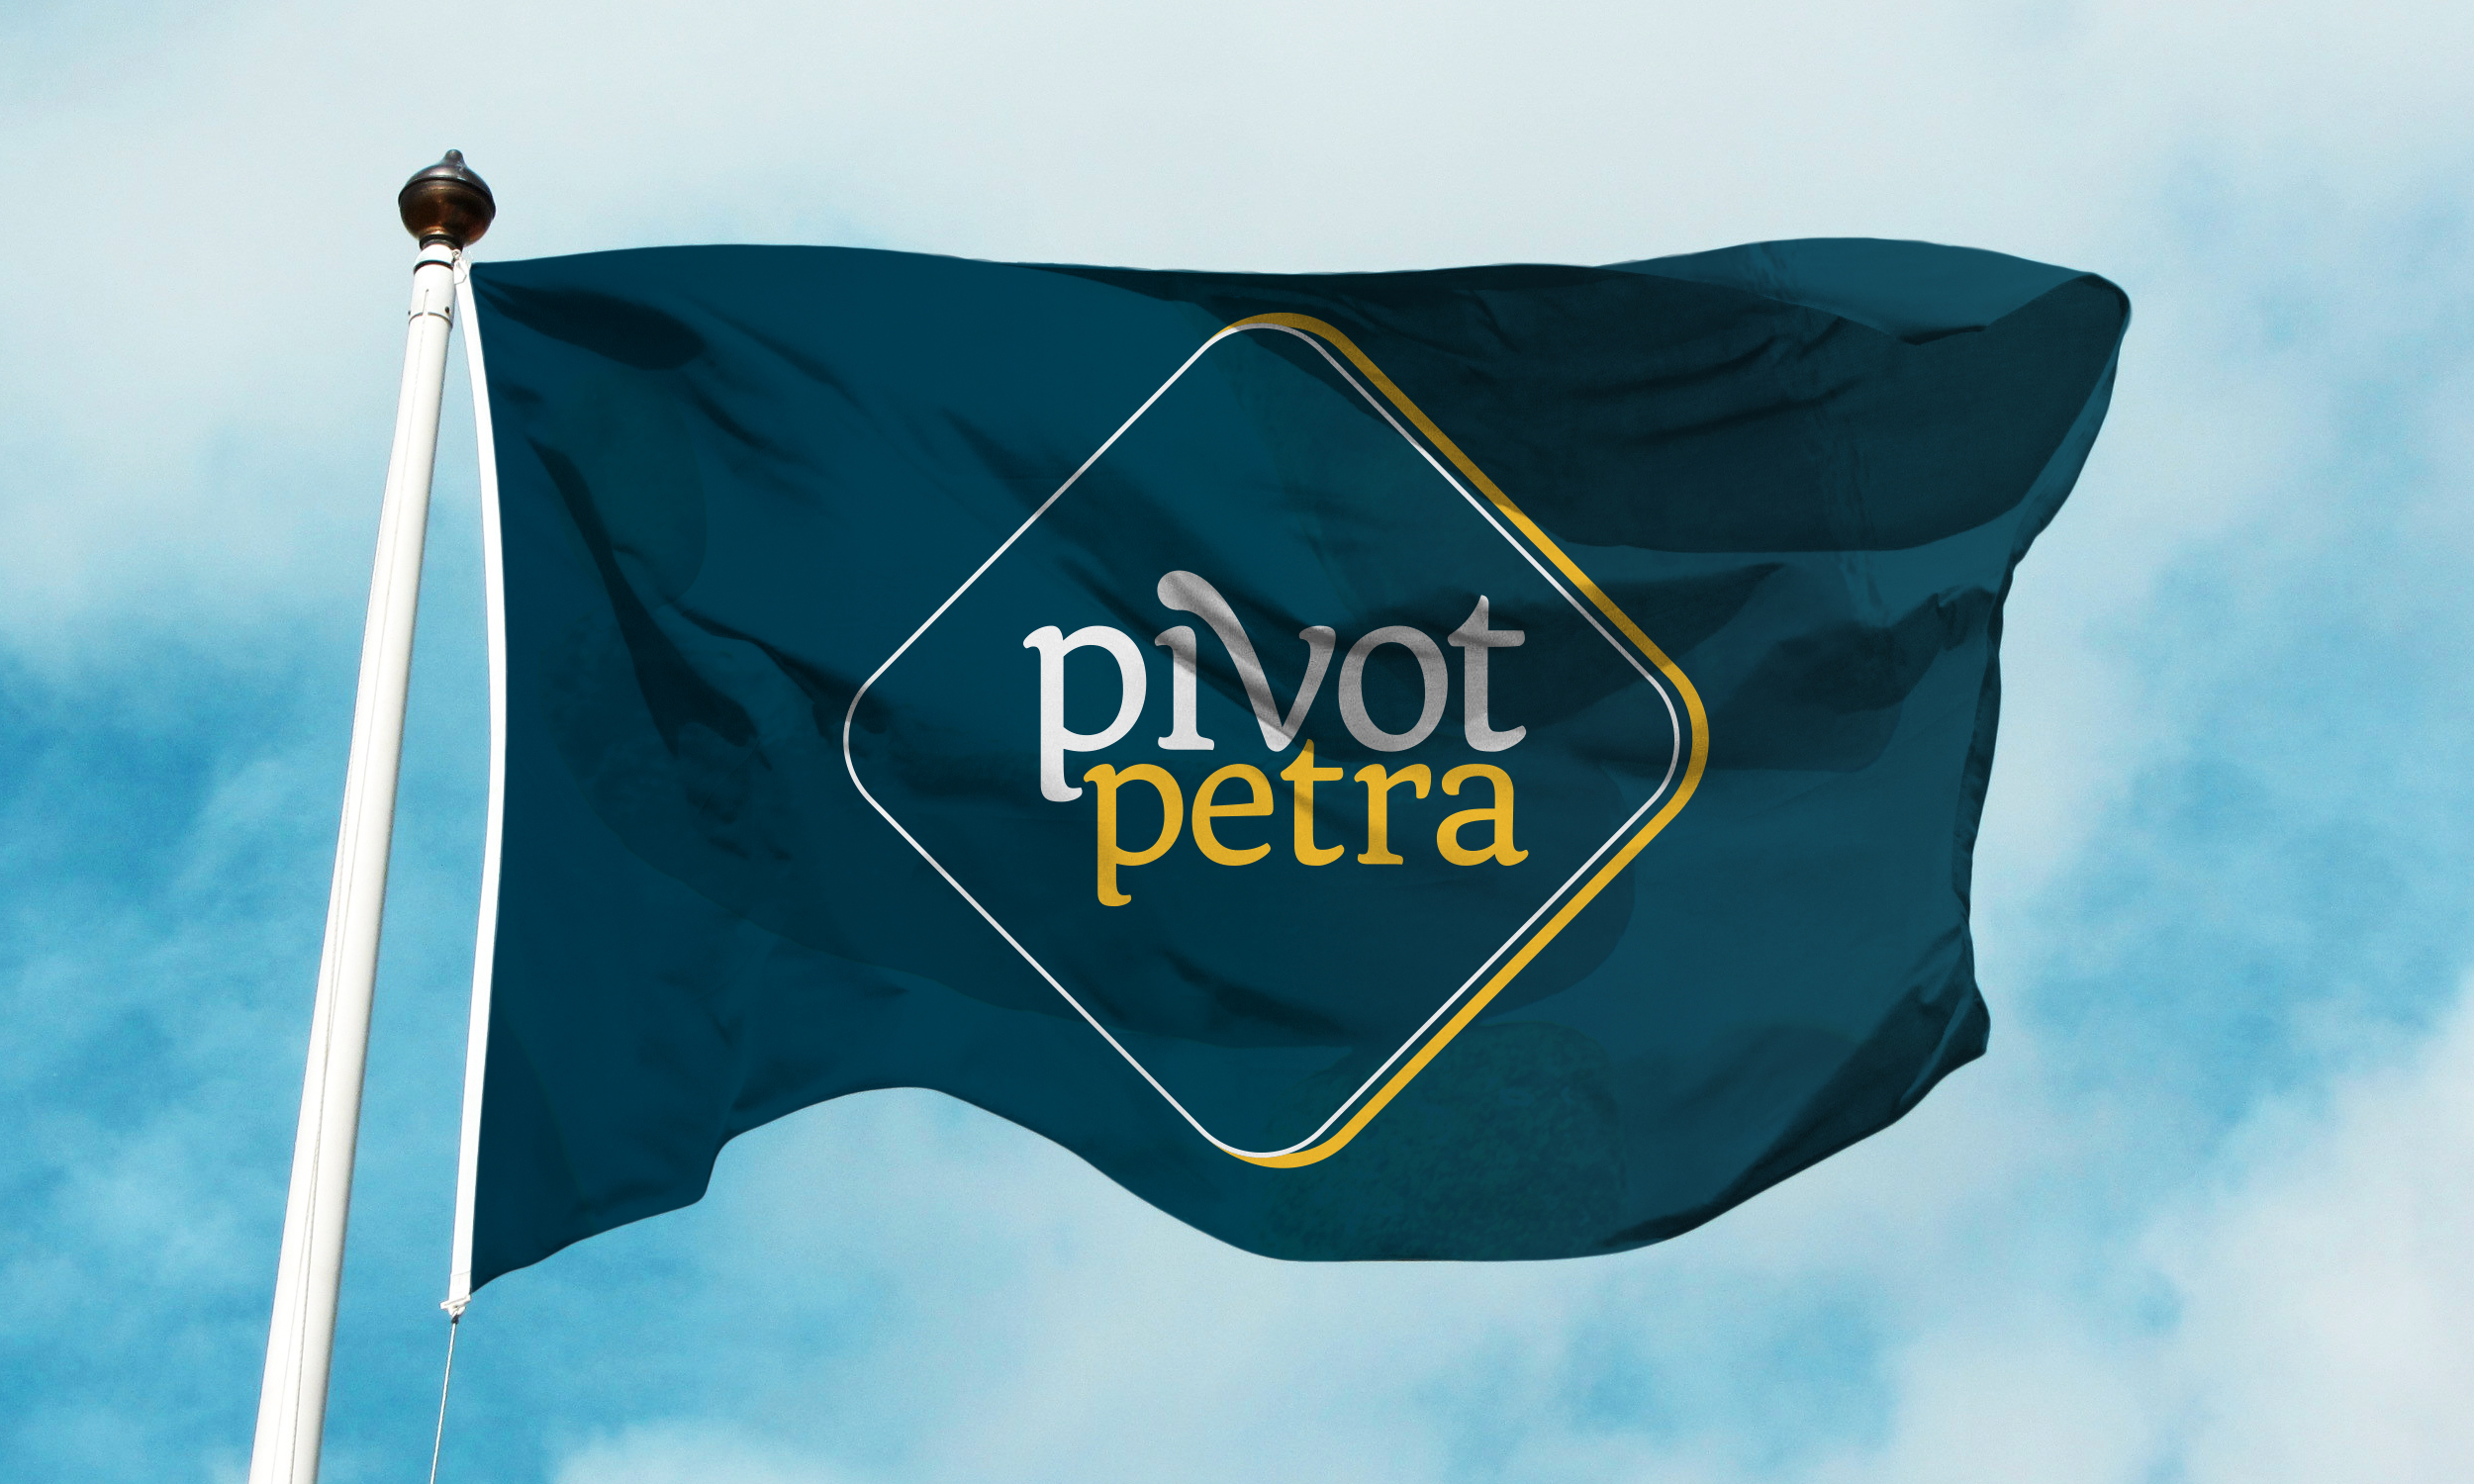 Copy of Pivot Petra - Vlag